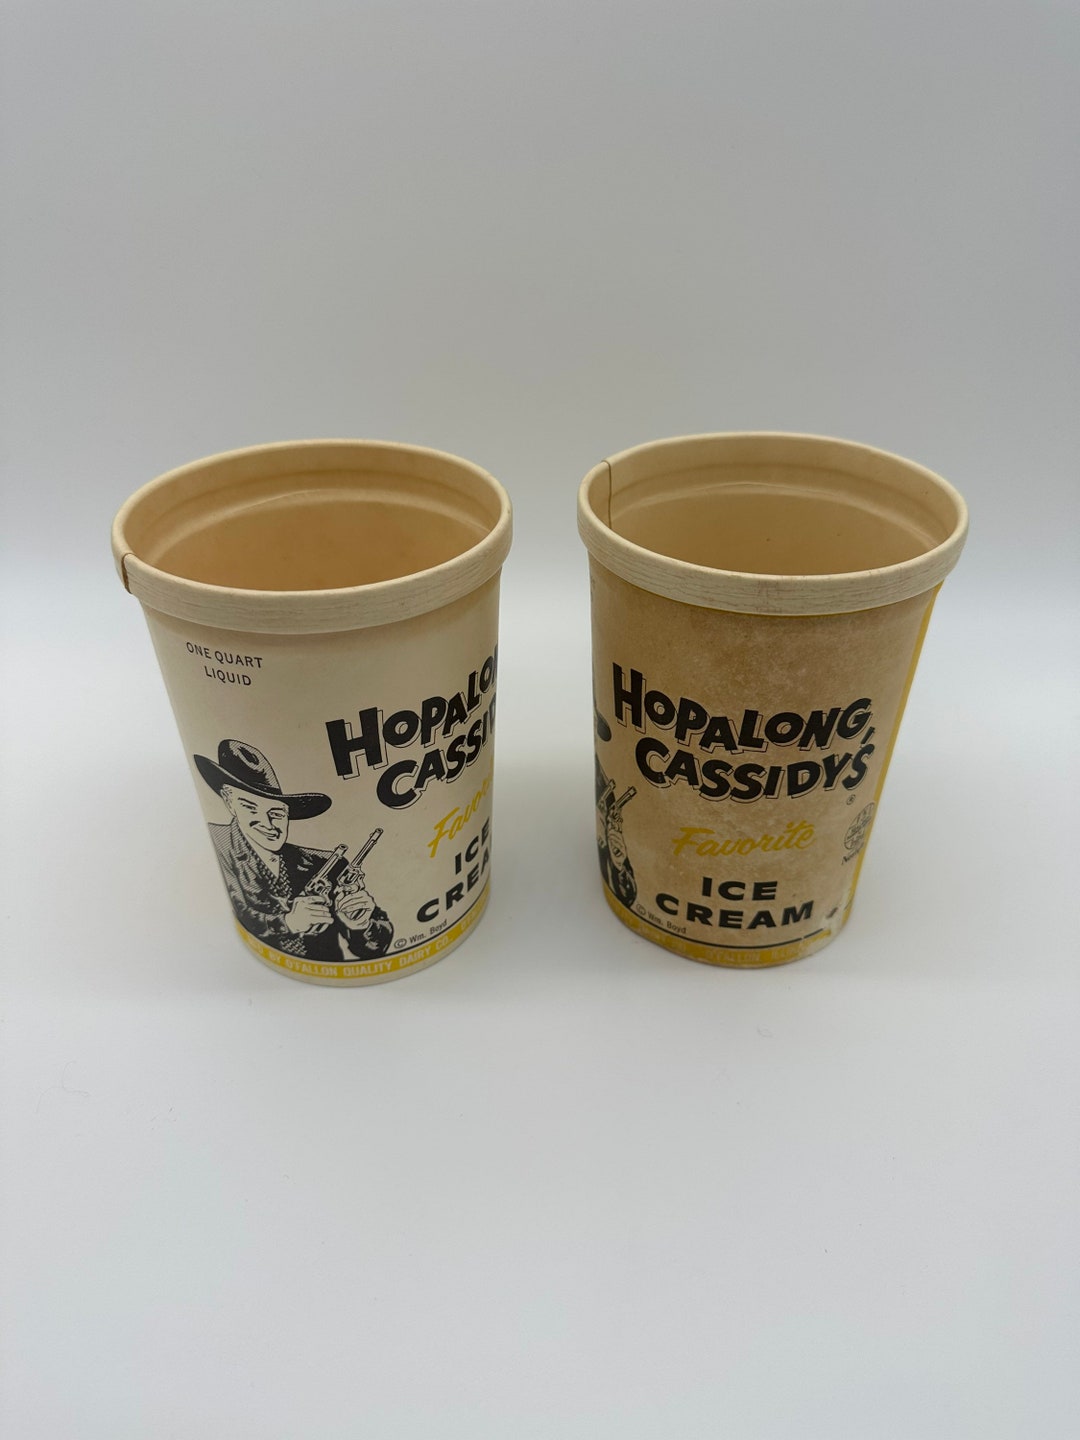 Vintage Original 1950s HOPALONG CASSIDY Ice Cream Box Quart